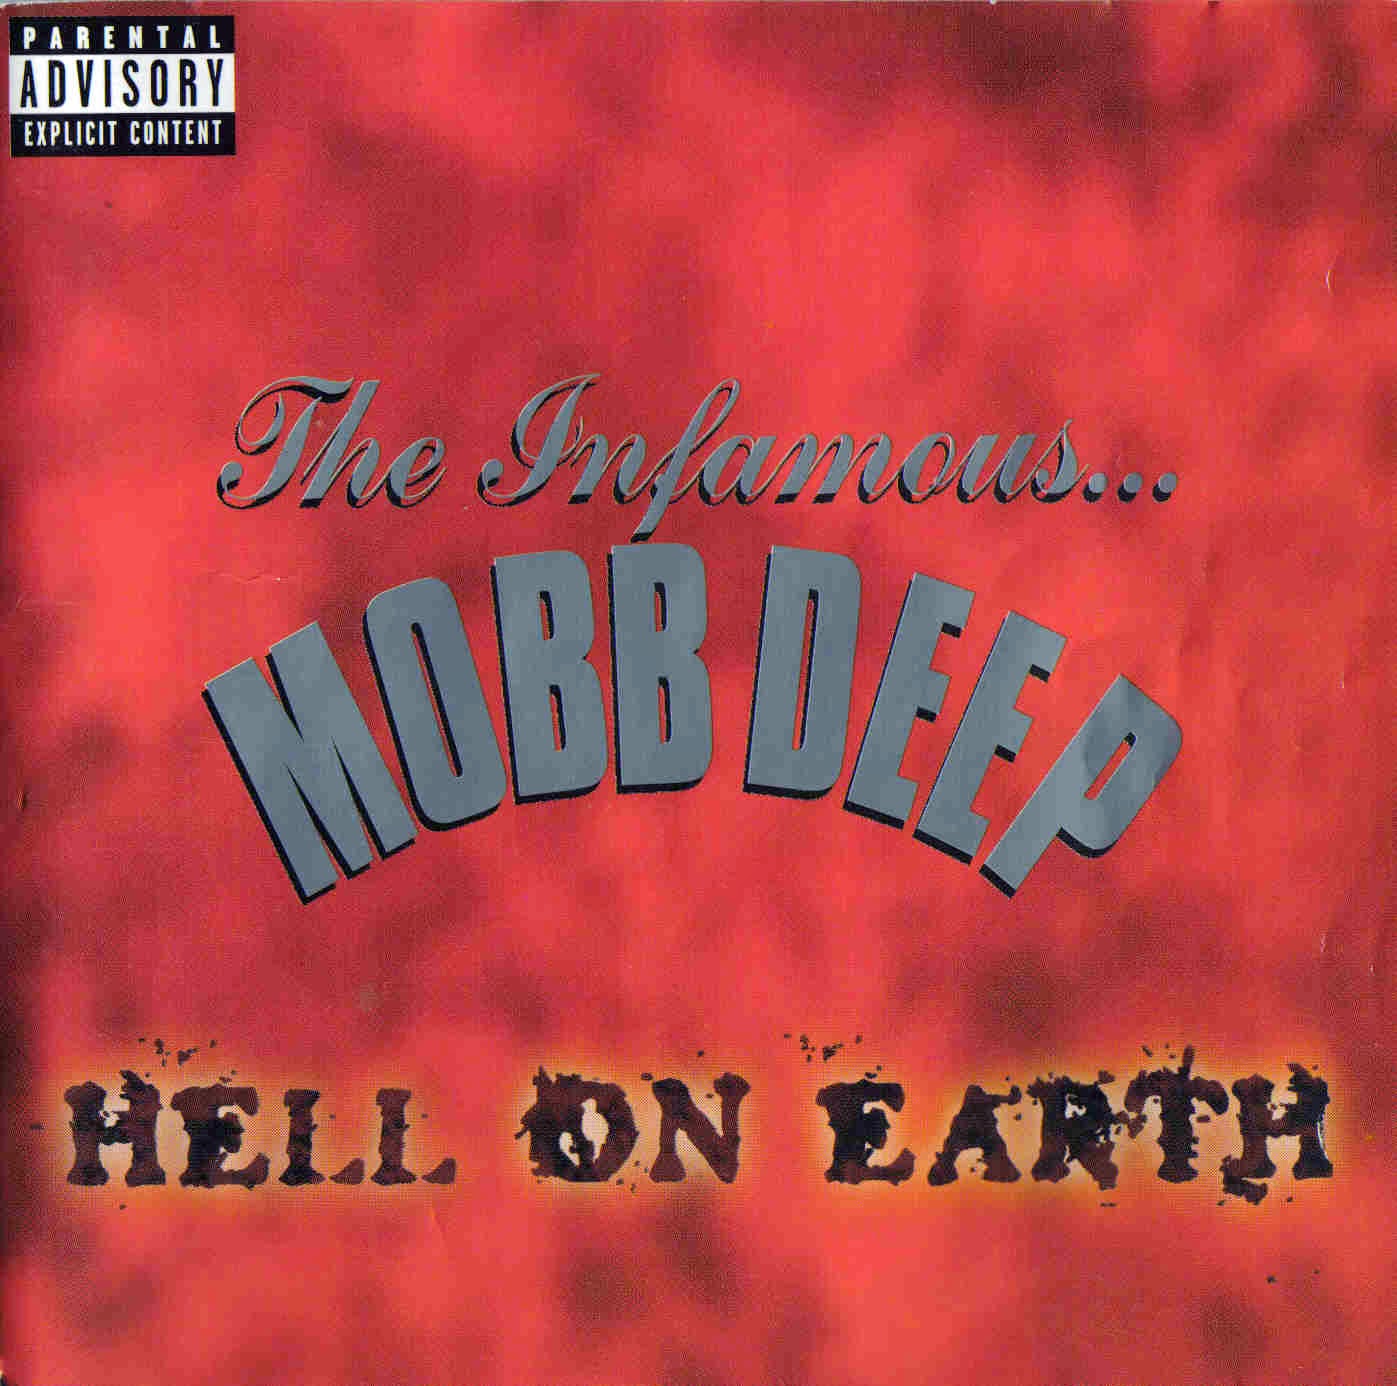 B&E Worldwide: Mobb Deep - Hell On Earth (2000) N.Y. (192 kBit/s)